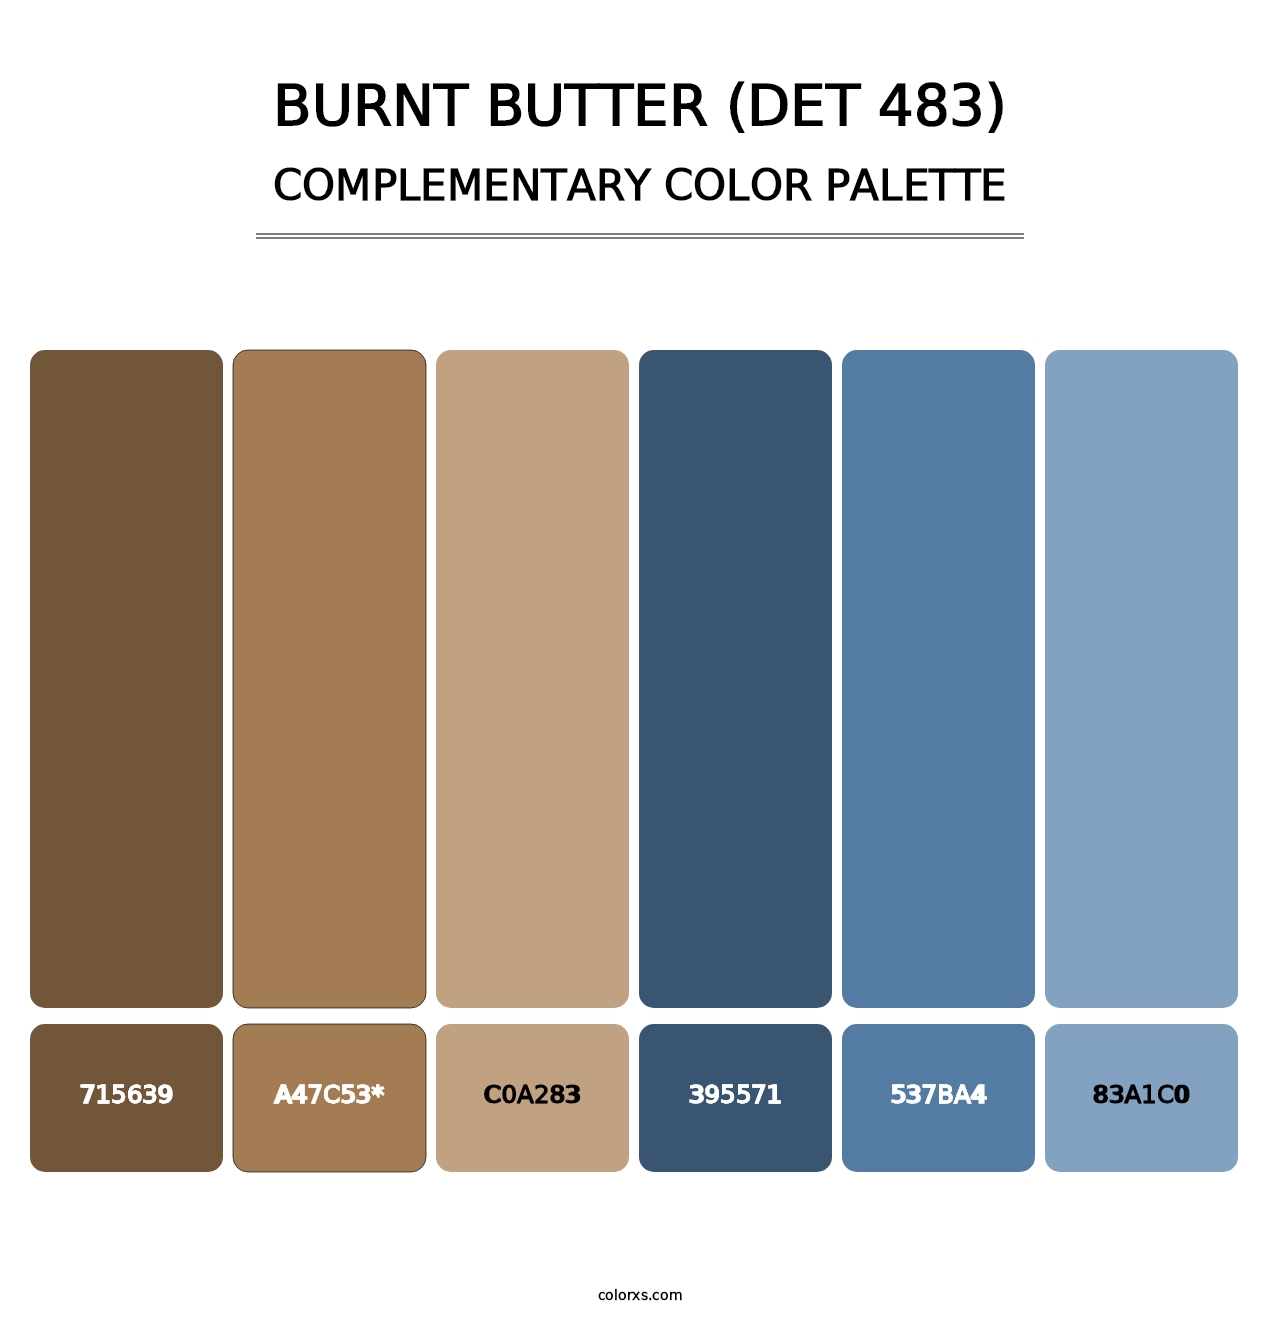 Burnt Butter (DET 483) - Complementary Color Palette